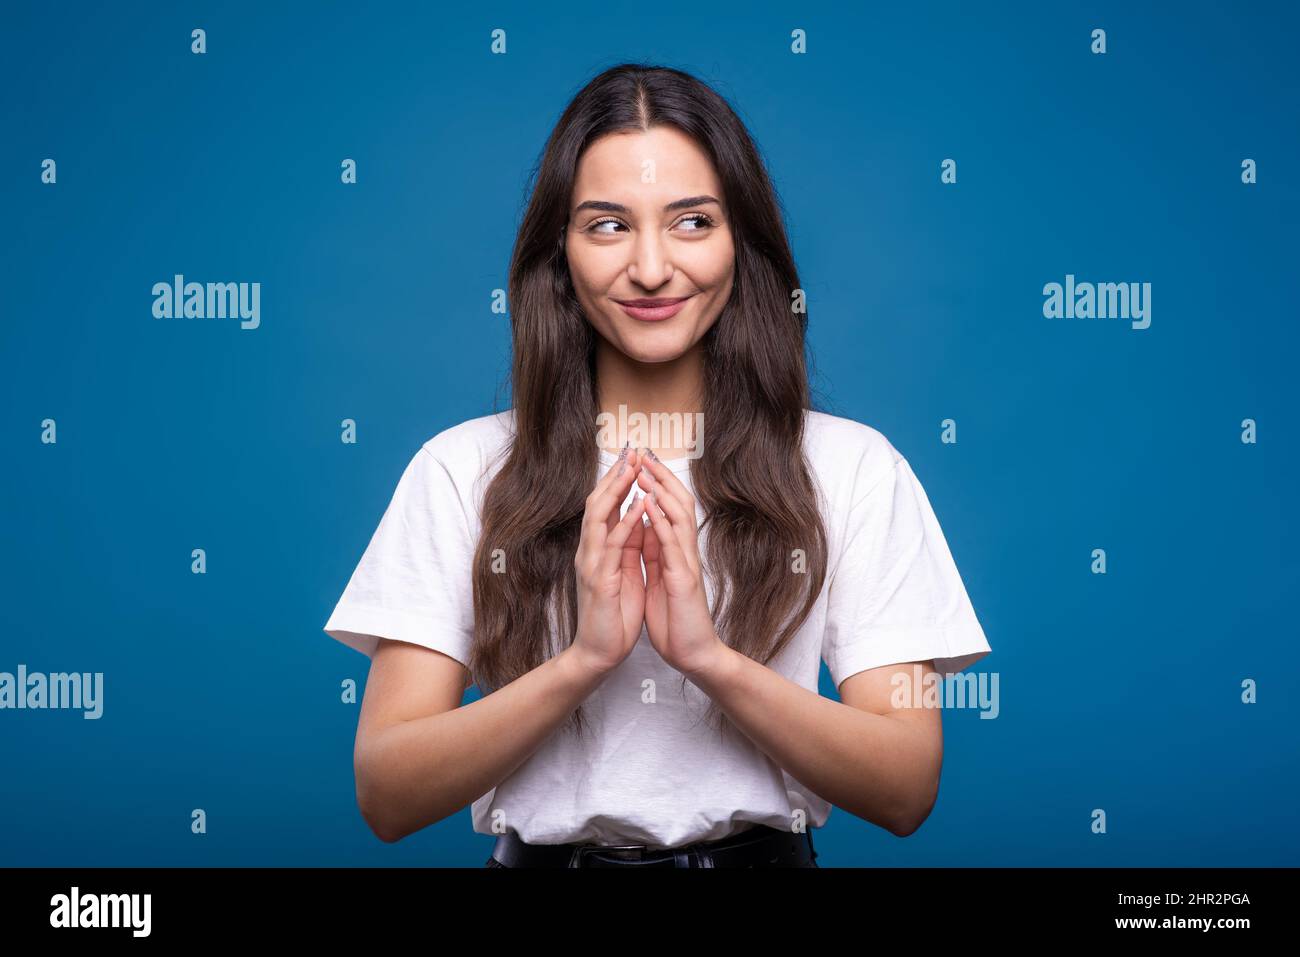 Attraente ragazza bruna caucasica o araba in una t-shirt bianca pensando e mostrando un gesto con le mani che sta tracciando un isolato di piano astuto Foto Stock